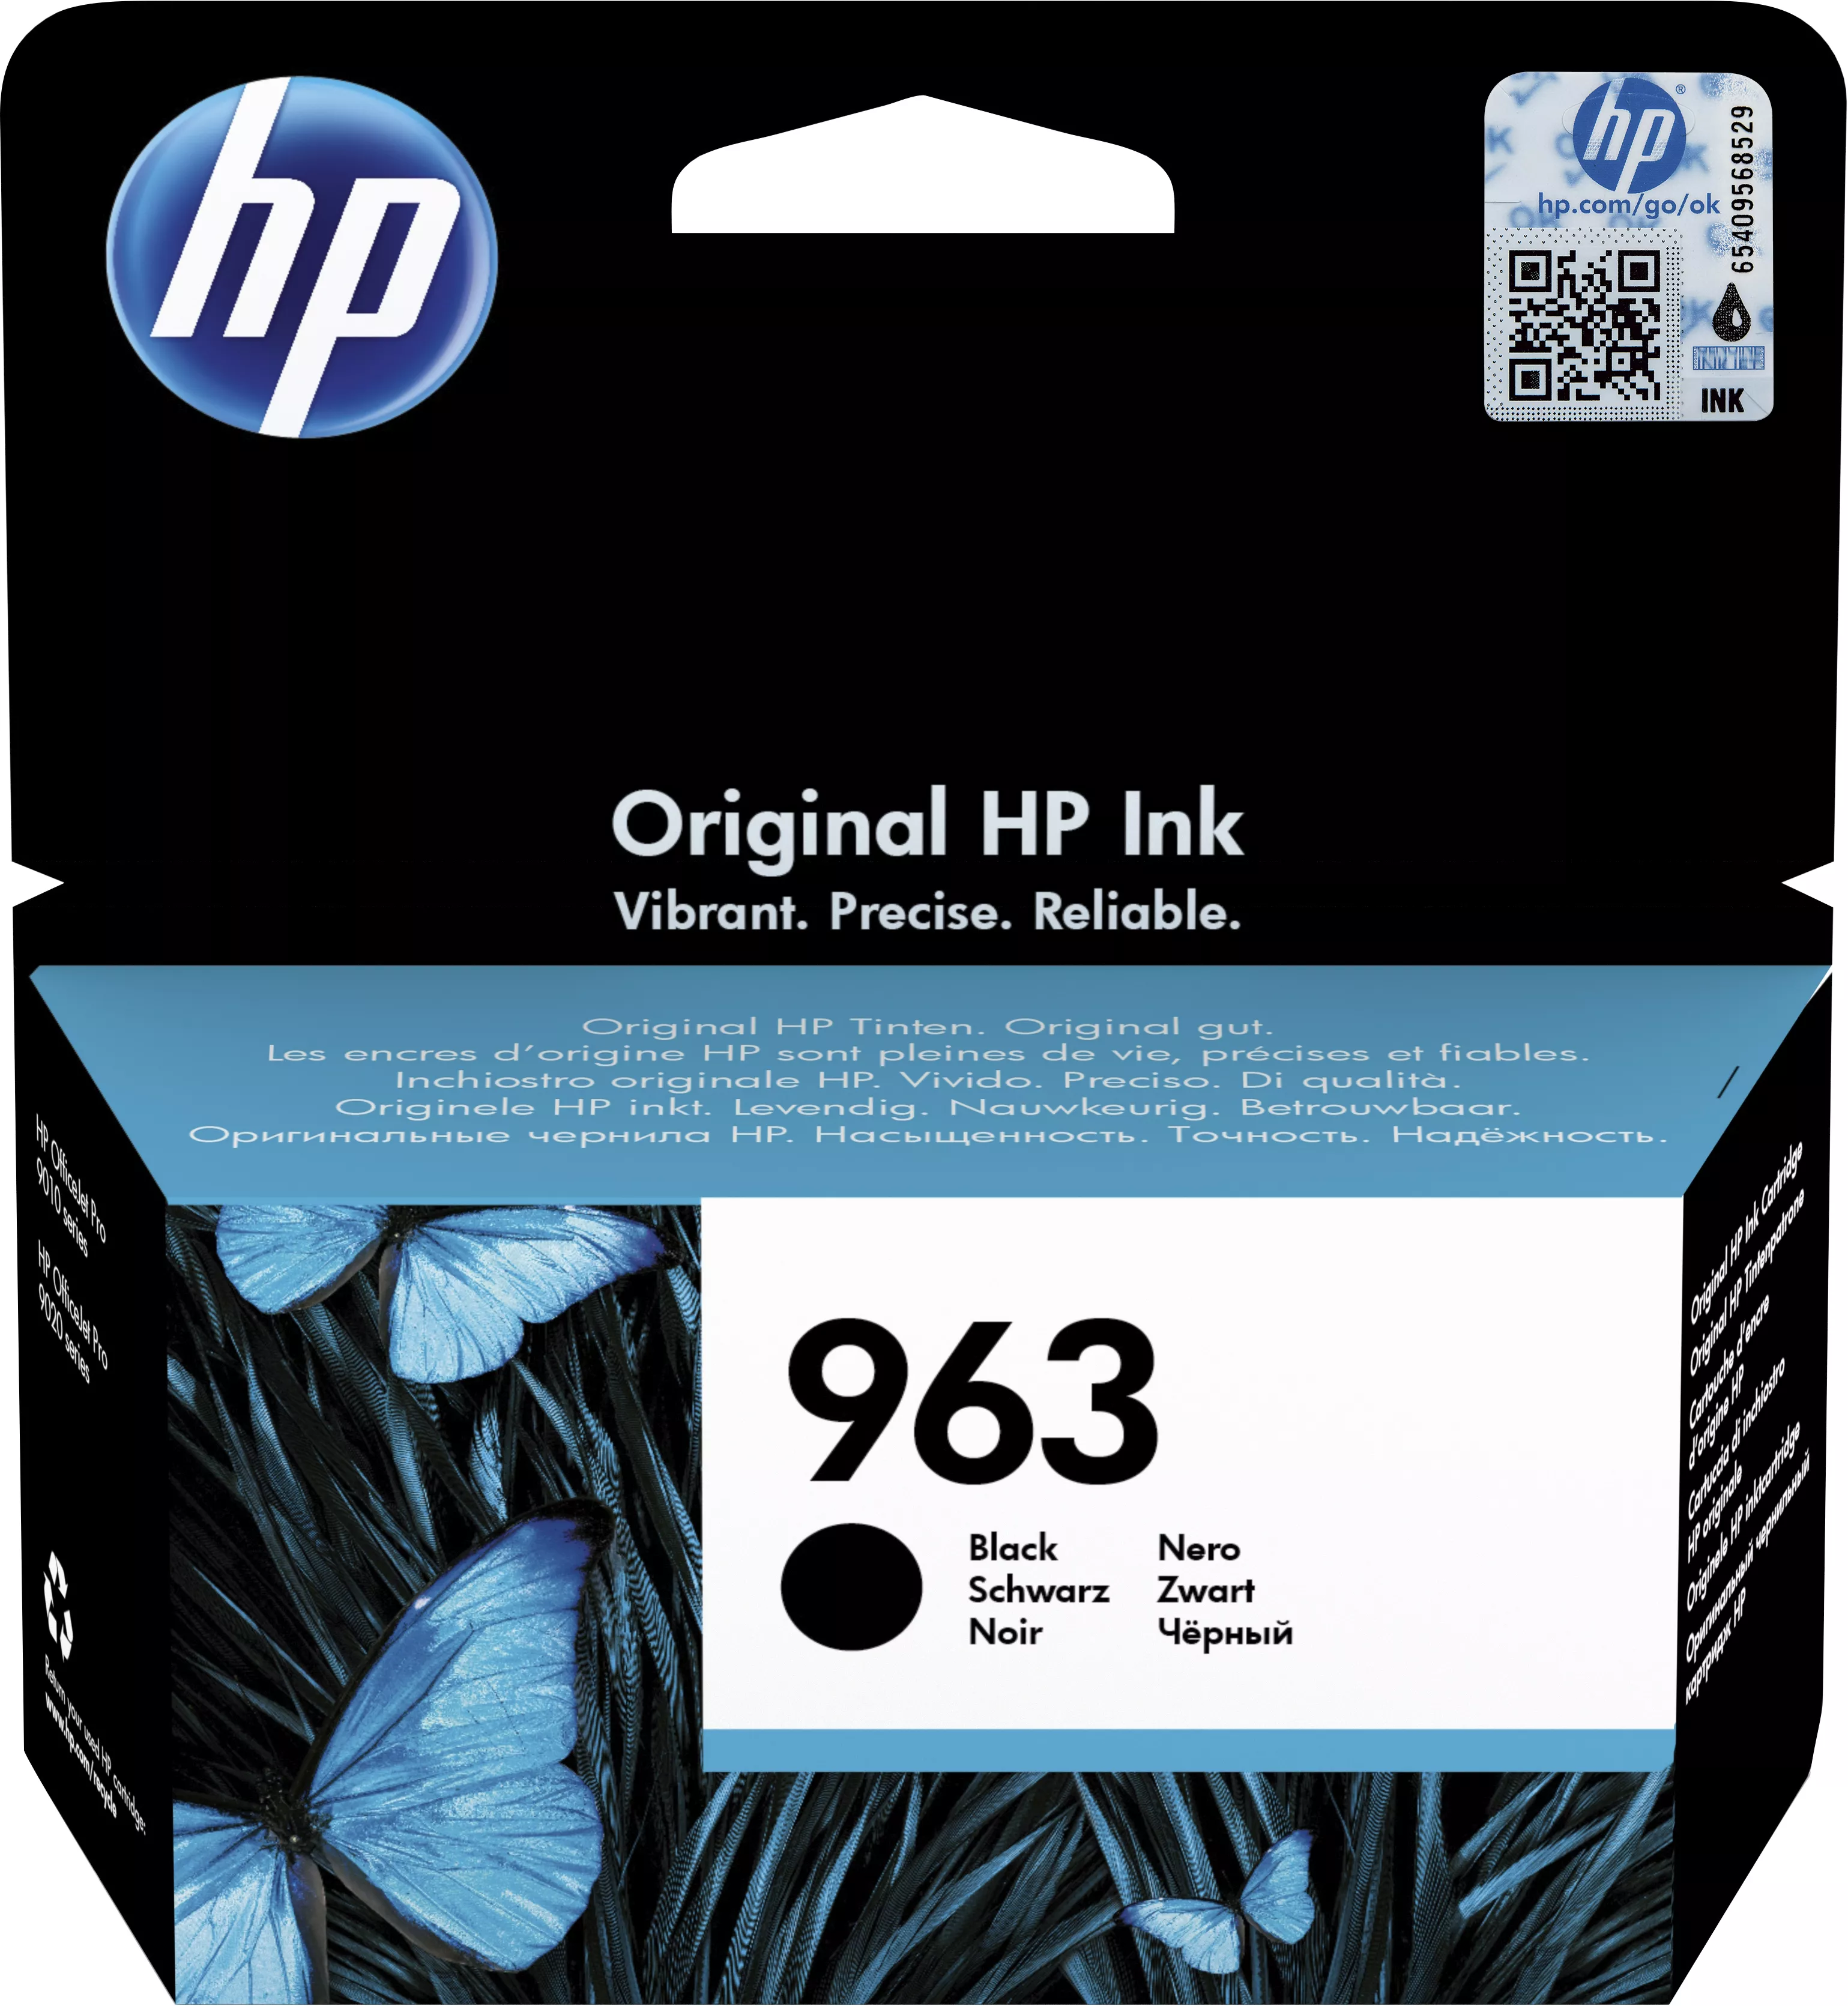 Achat HP 963 Black Original Ink Cartridge et autres produits de la marque HP